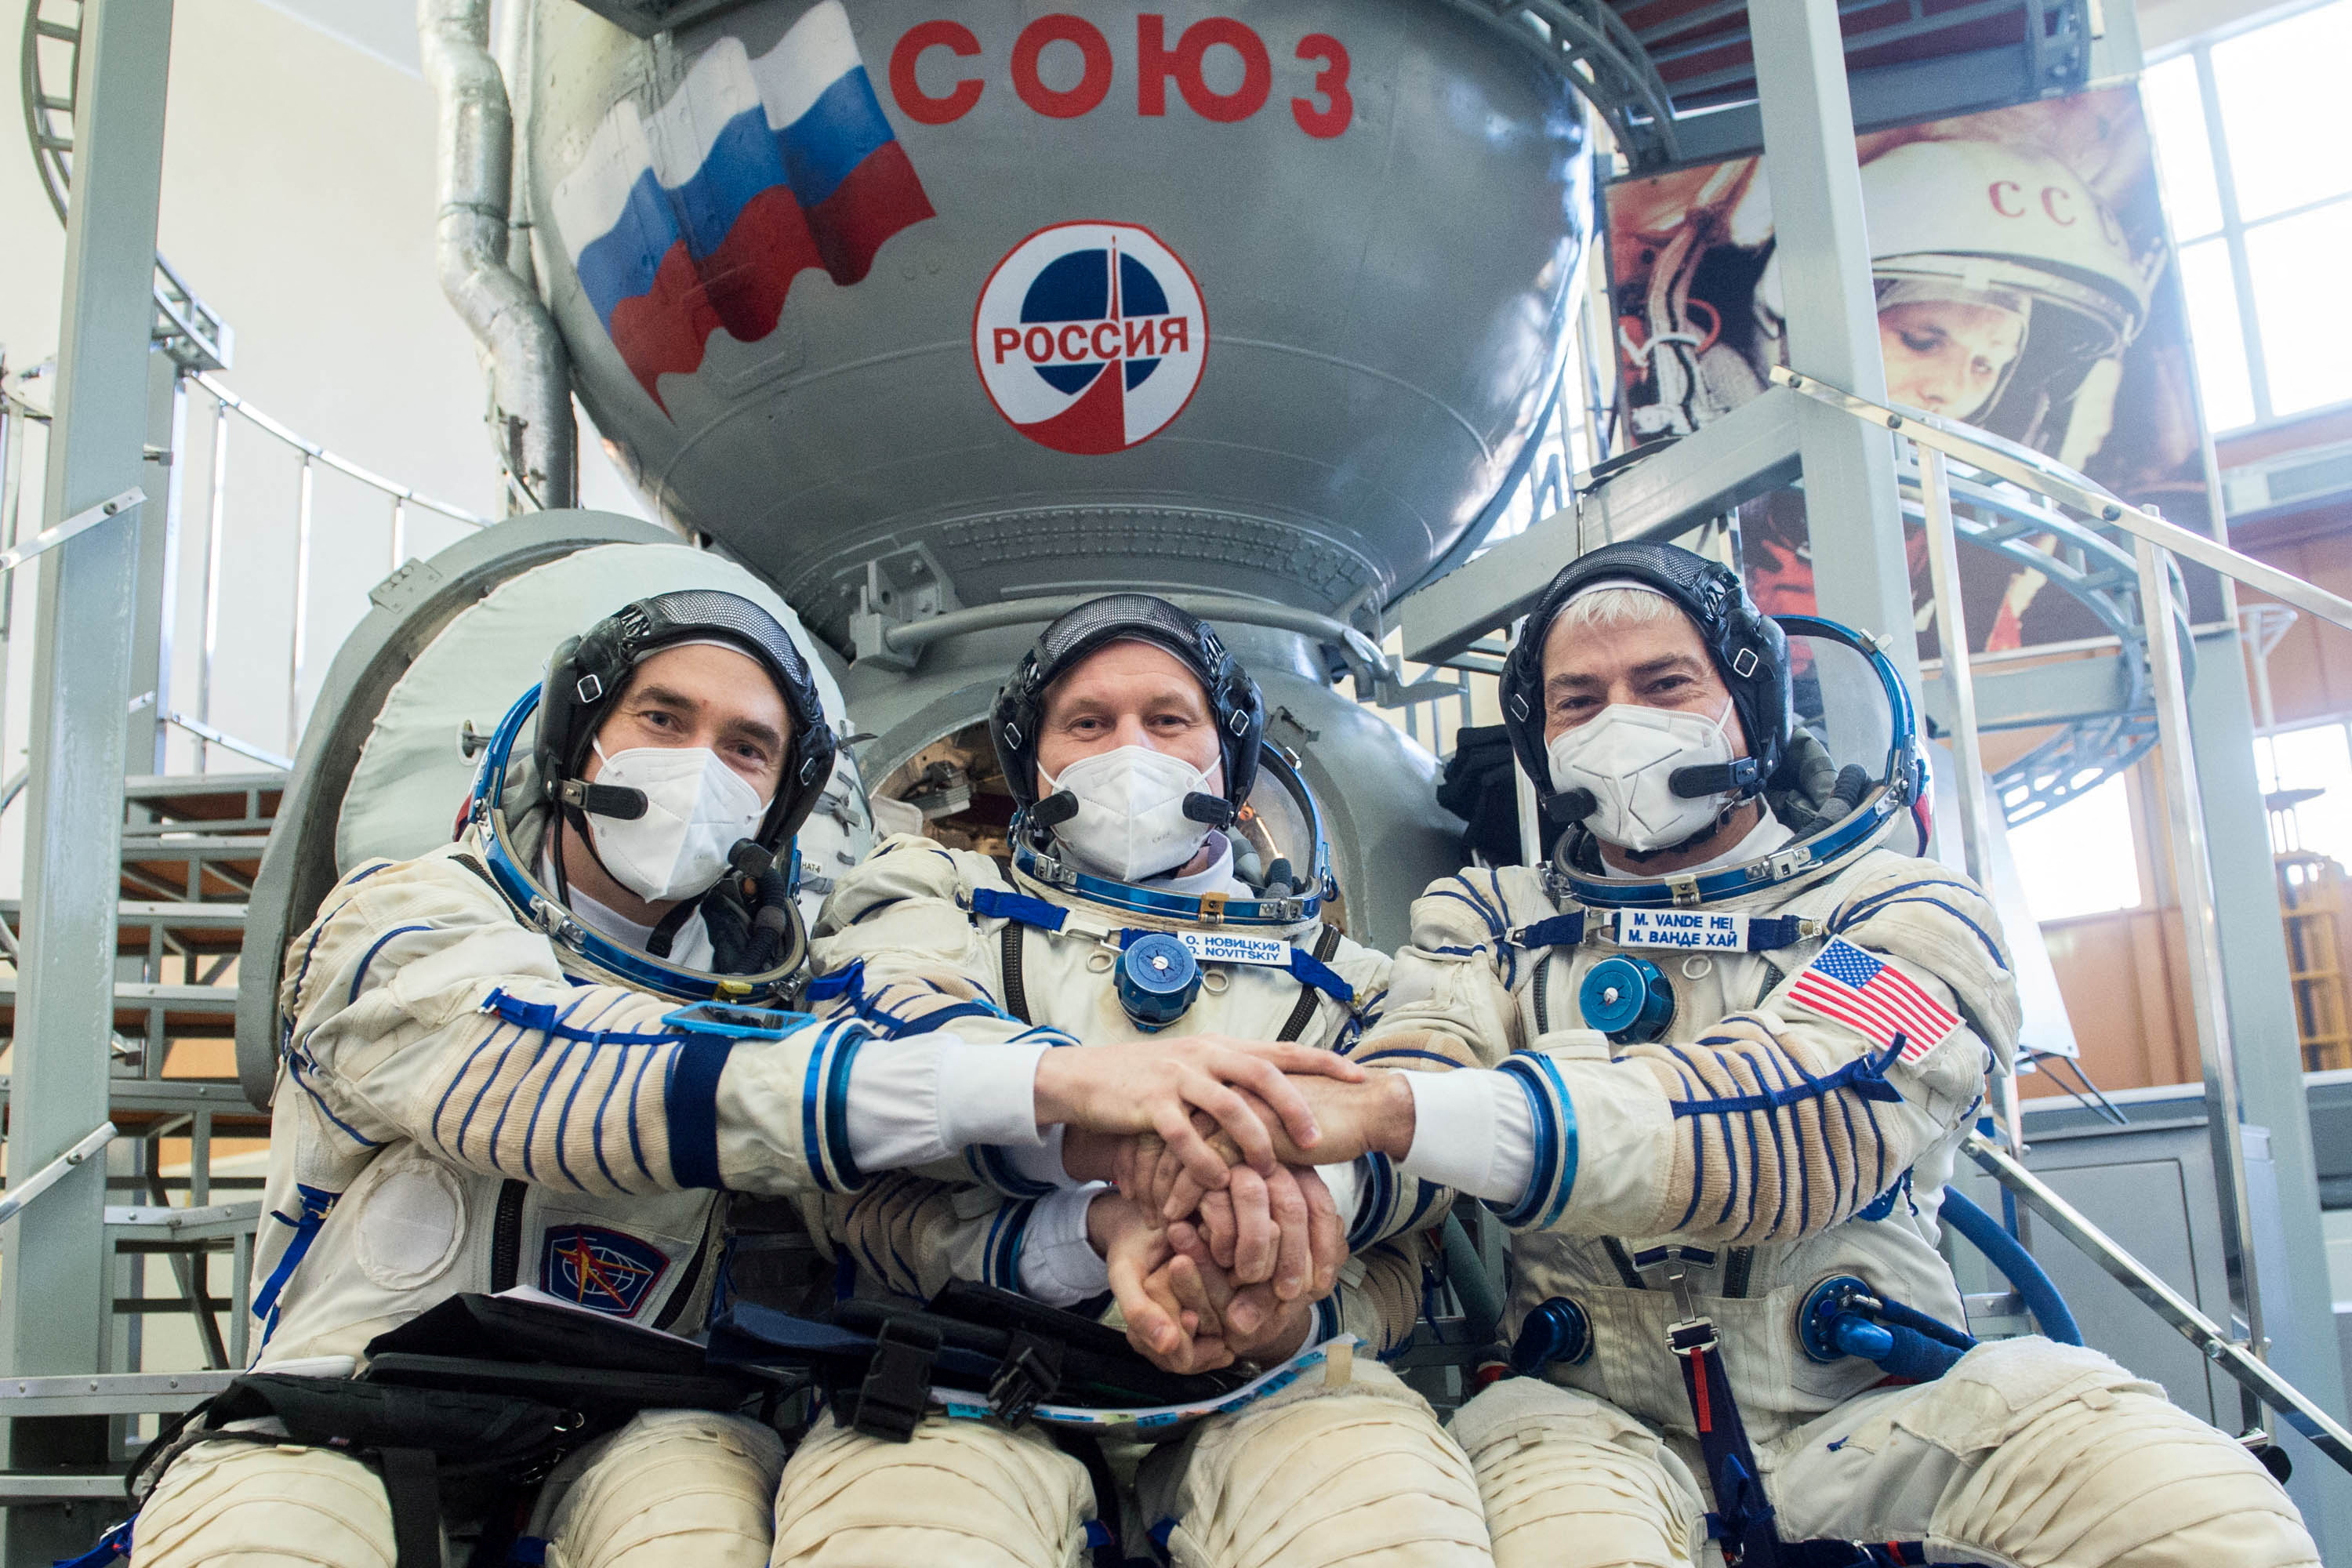 FOTO DE ARCHIVO: Los cosmonautas de la agencia espacial rusa Roscosmos Pyotr Dubrov, Oleg Novitskiy y el astronauta de la NASA Mark Vande Hei posan para una fotografía durante una sesión de entrenamiento antes de su expedición a la Estación Espacial Internacional (ISS) en Star City, Rusia, el 20 de marzo de 2021 (Andrey Shelepin/GCTC/Agencia espacial rusa Roscosmos/REUTERS)